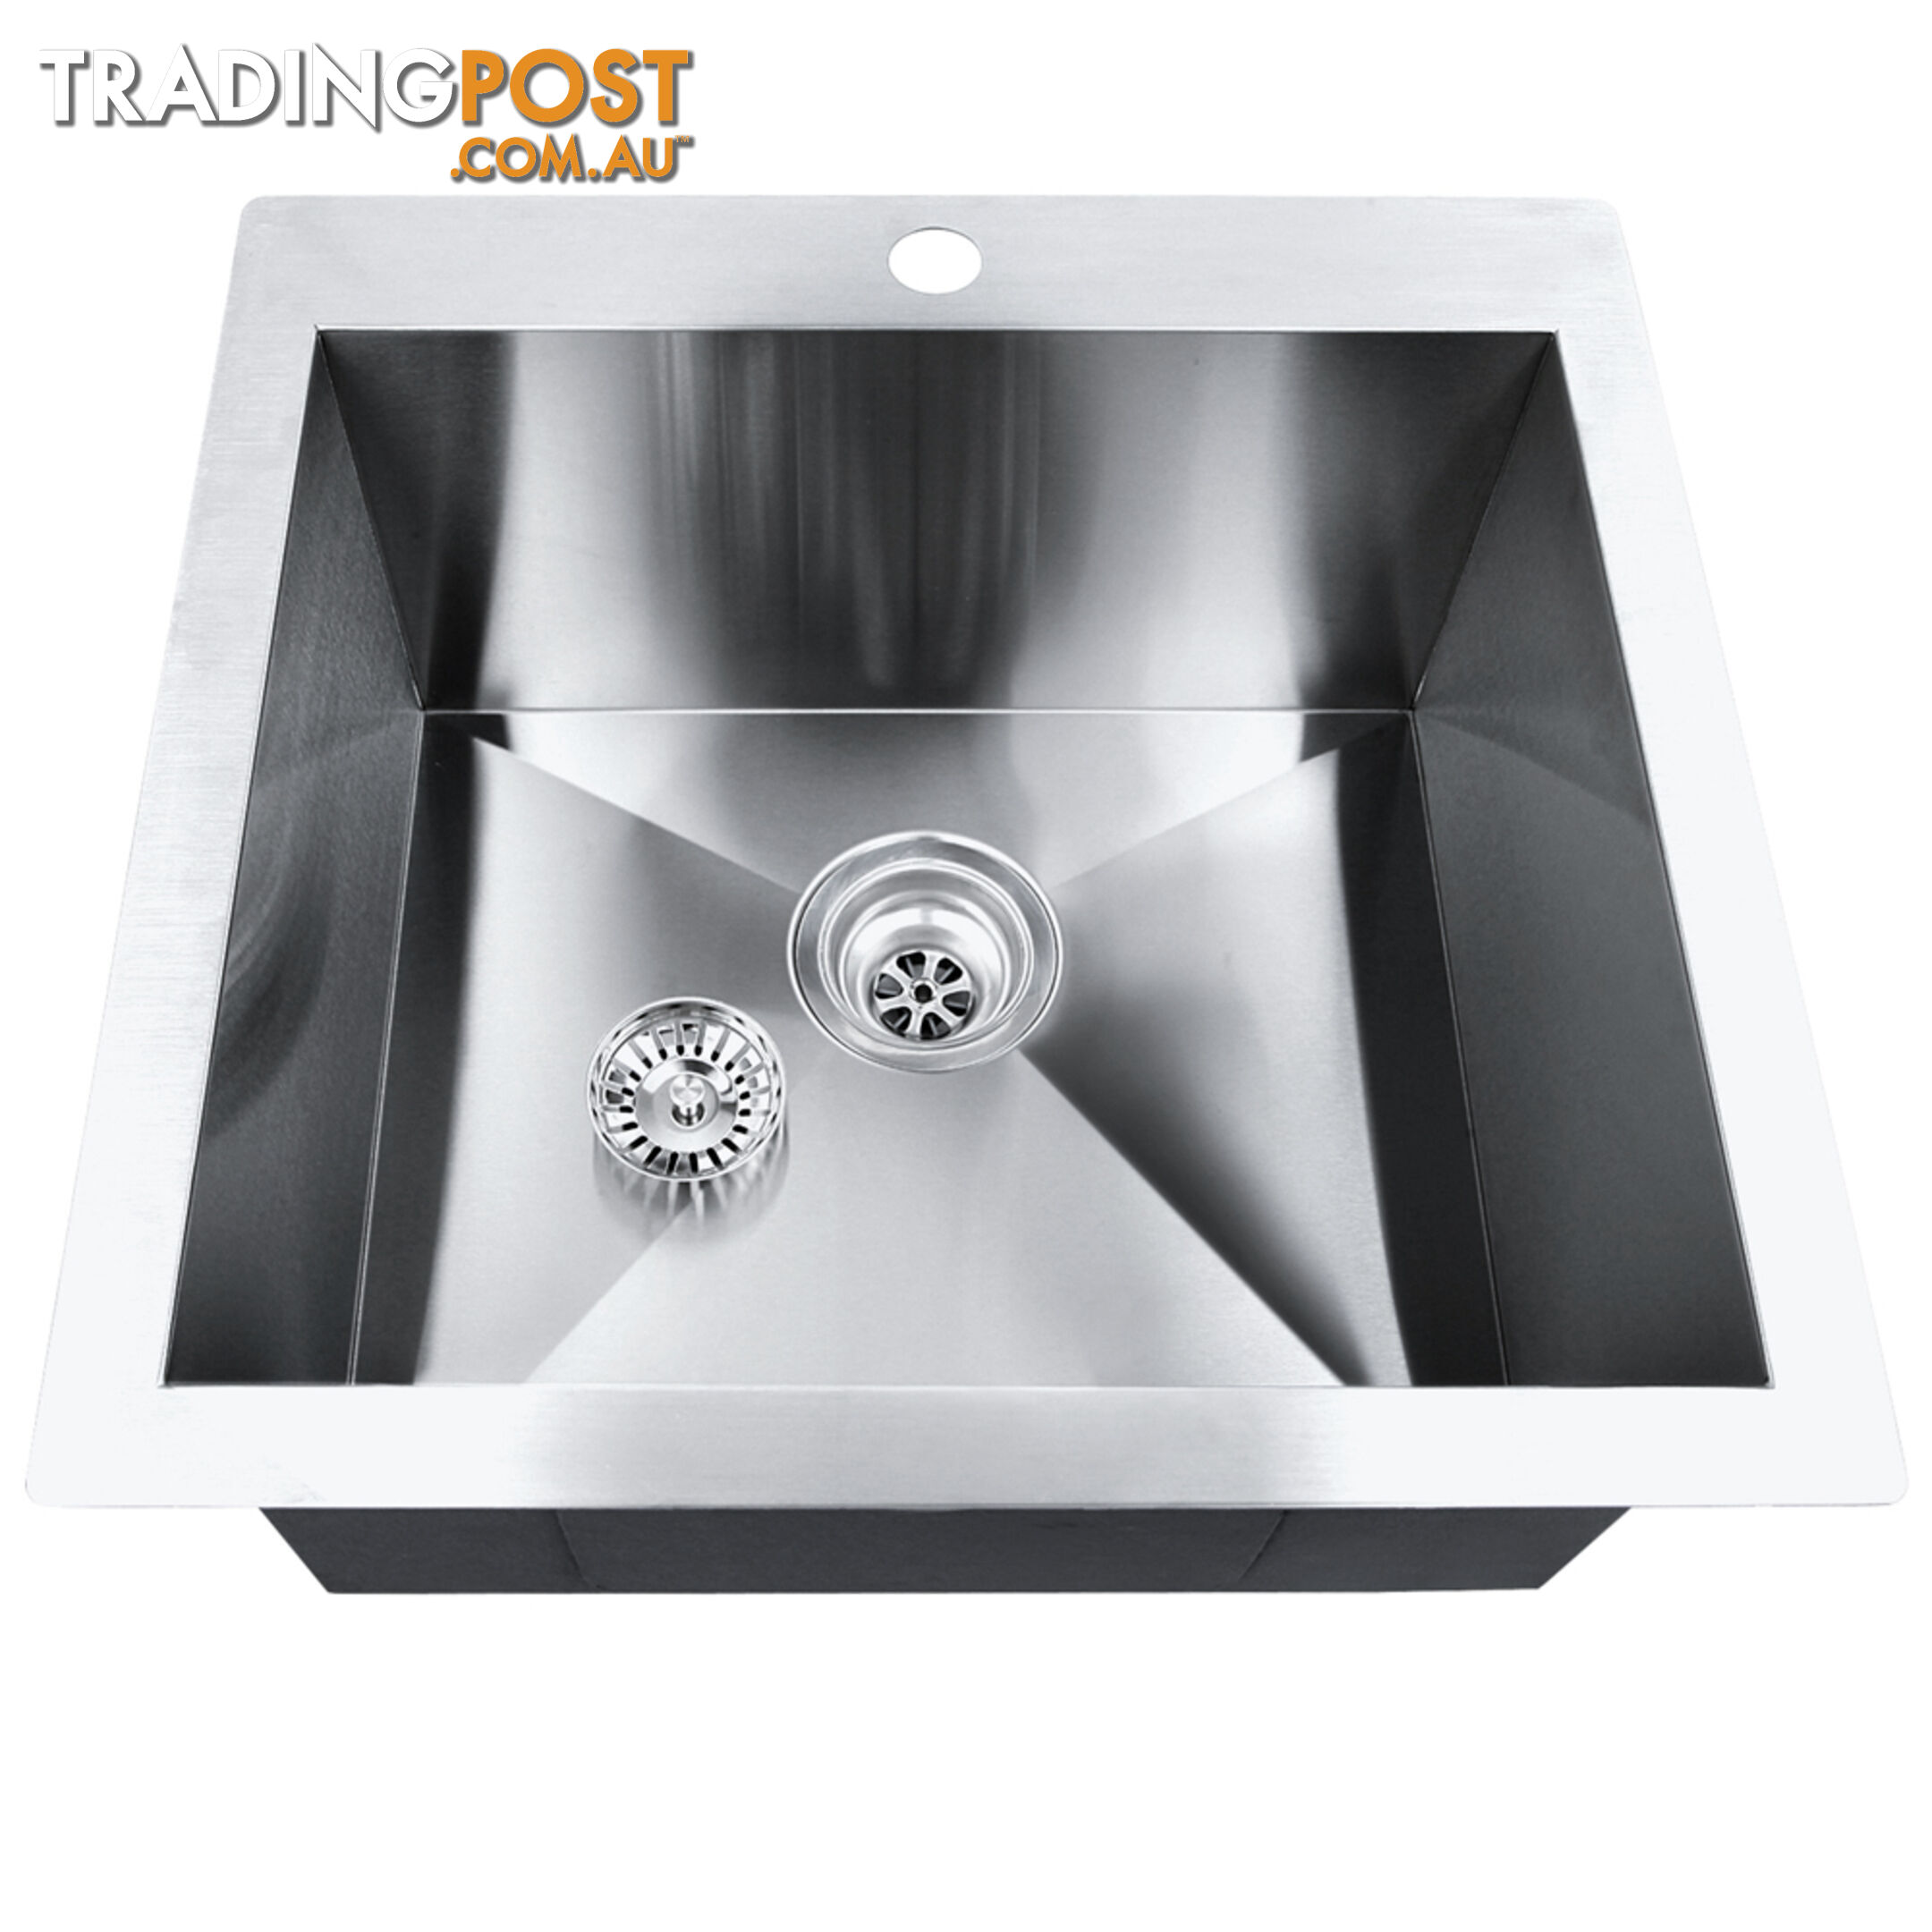 Stainless Steel Kitchen Laundry Sink w/ Strainer Waste 530 x 500mm